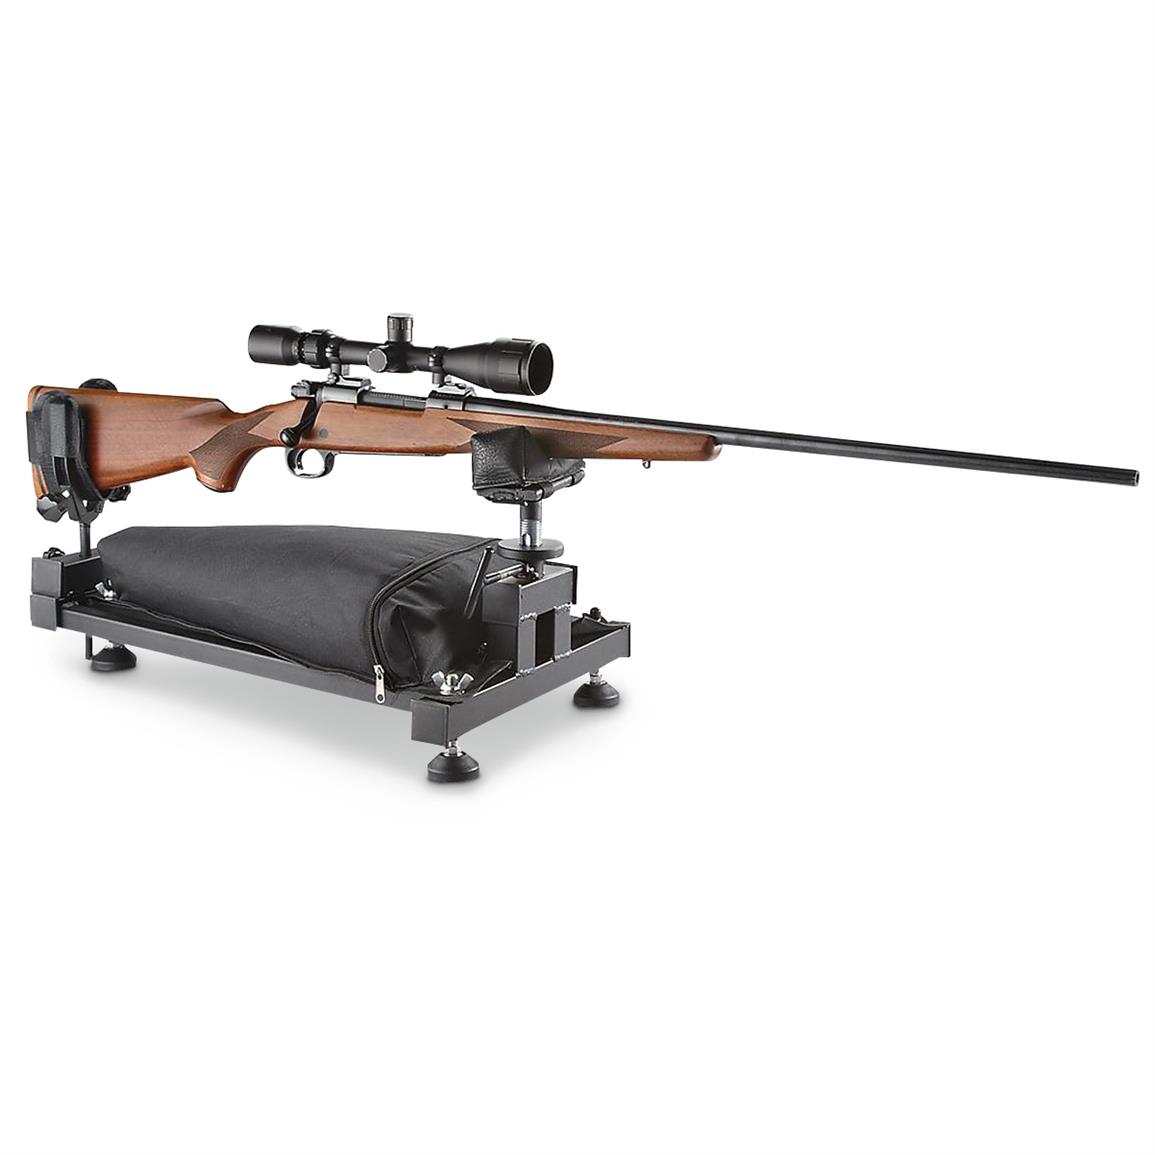 Caldwell 110033 Stinger Adjustable Shooting Rest for sale online 